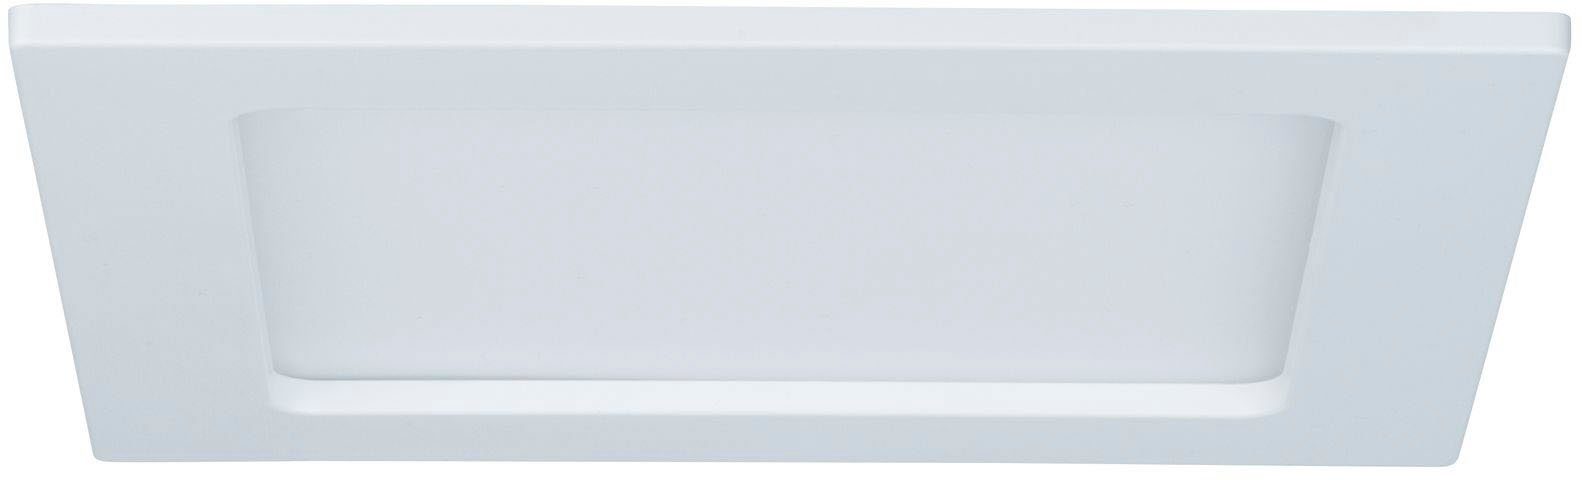 Badezimmer Decke LED kaufen online Panels OTTO 